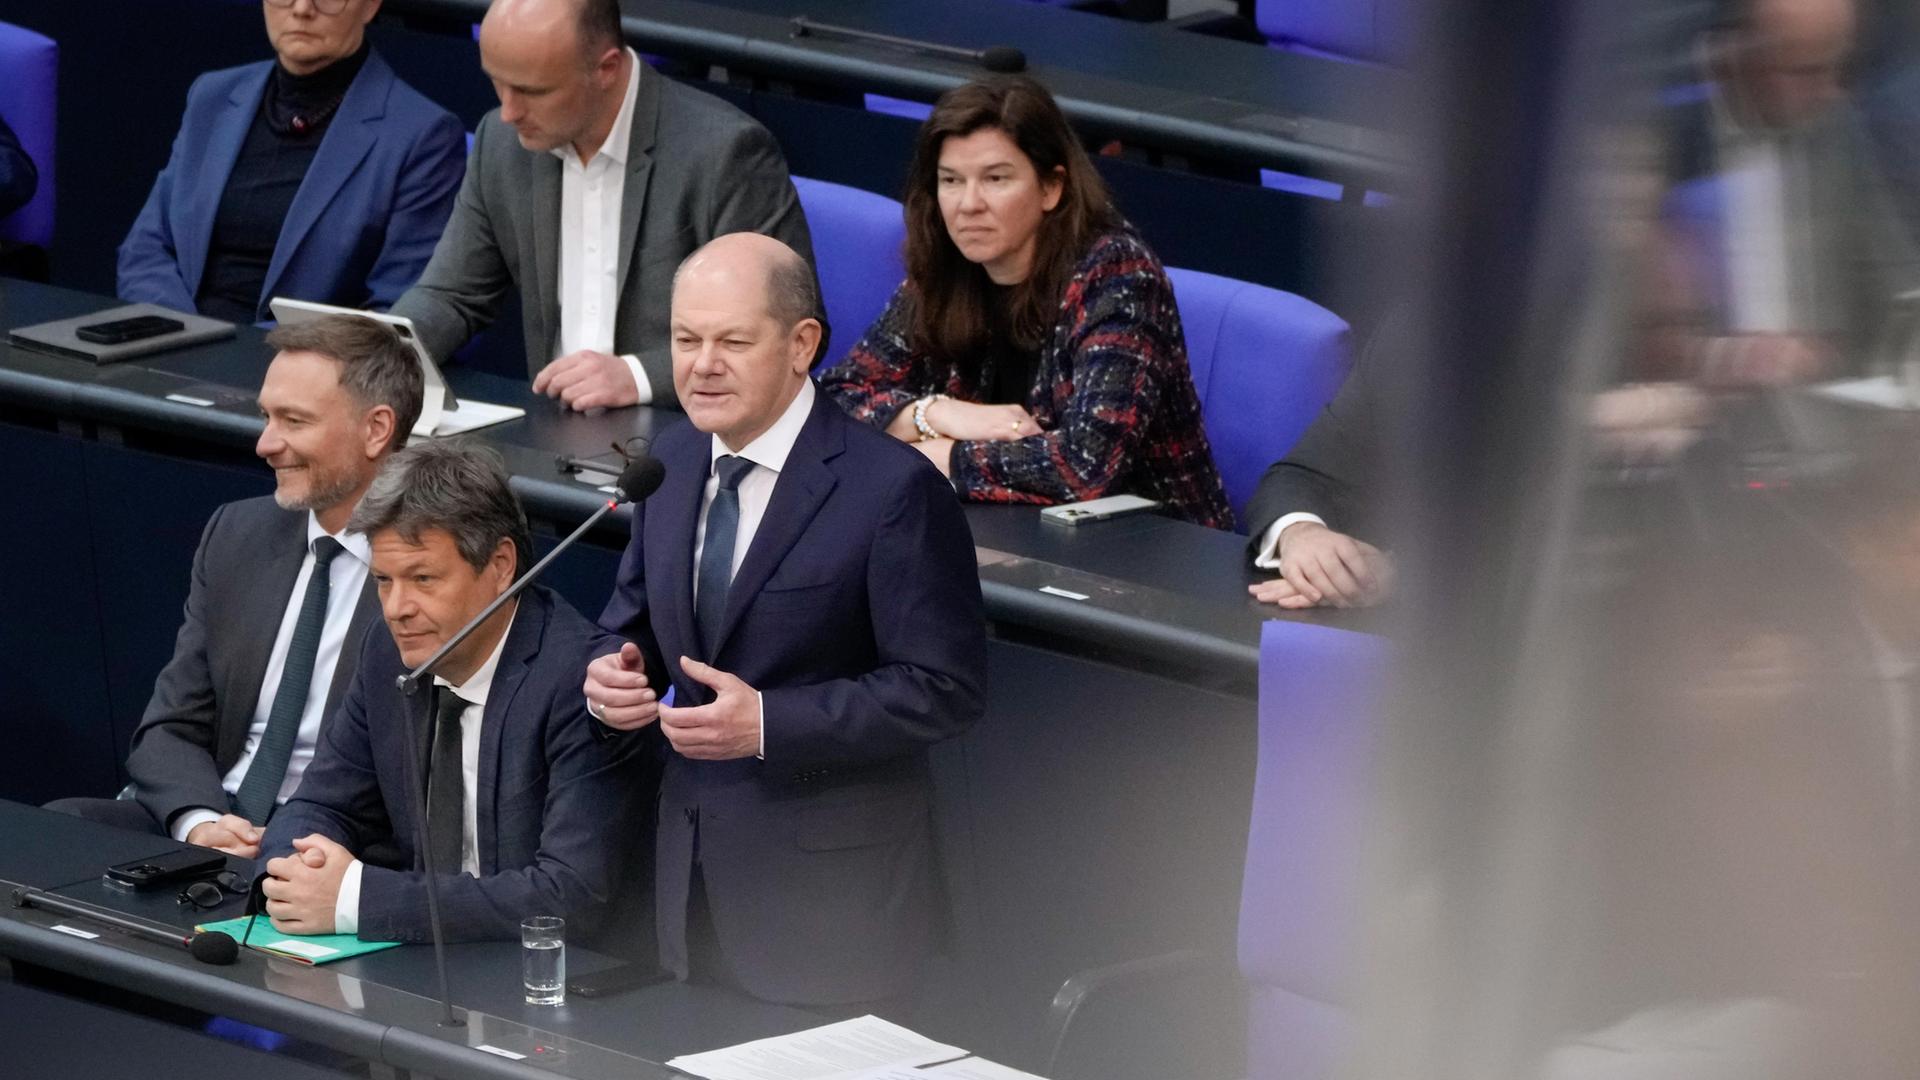 Bundeskanzler Olaf Scholz (SPD, rechts) gemeinsam mit Wirtschafts- und Klimaminister Robert Habeck (Grüne) und Finanzminister Christian Lindner (FDP) auf der Regierungsbank bei der Befragung des Bundeskanzlers. Alle drei tragen dunkle Anzüge, Scholz steht, die beiden Minister sitzen.